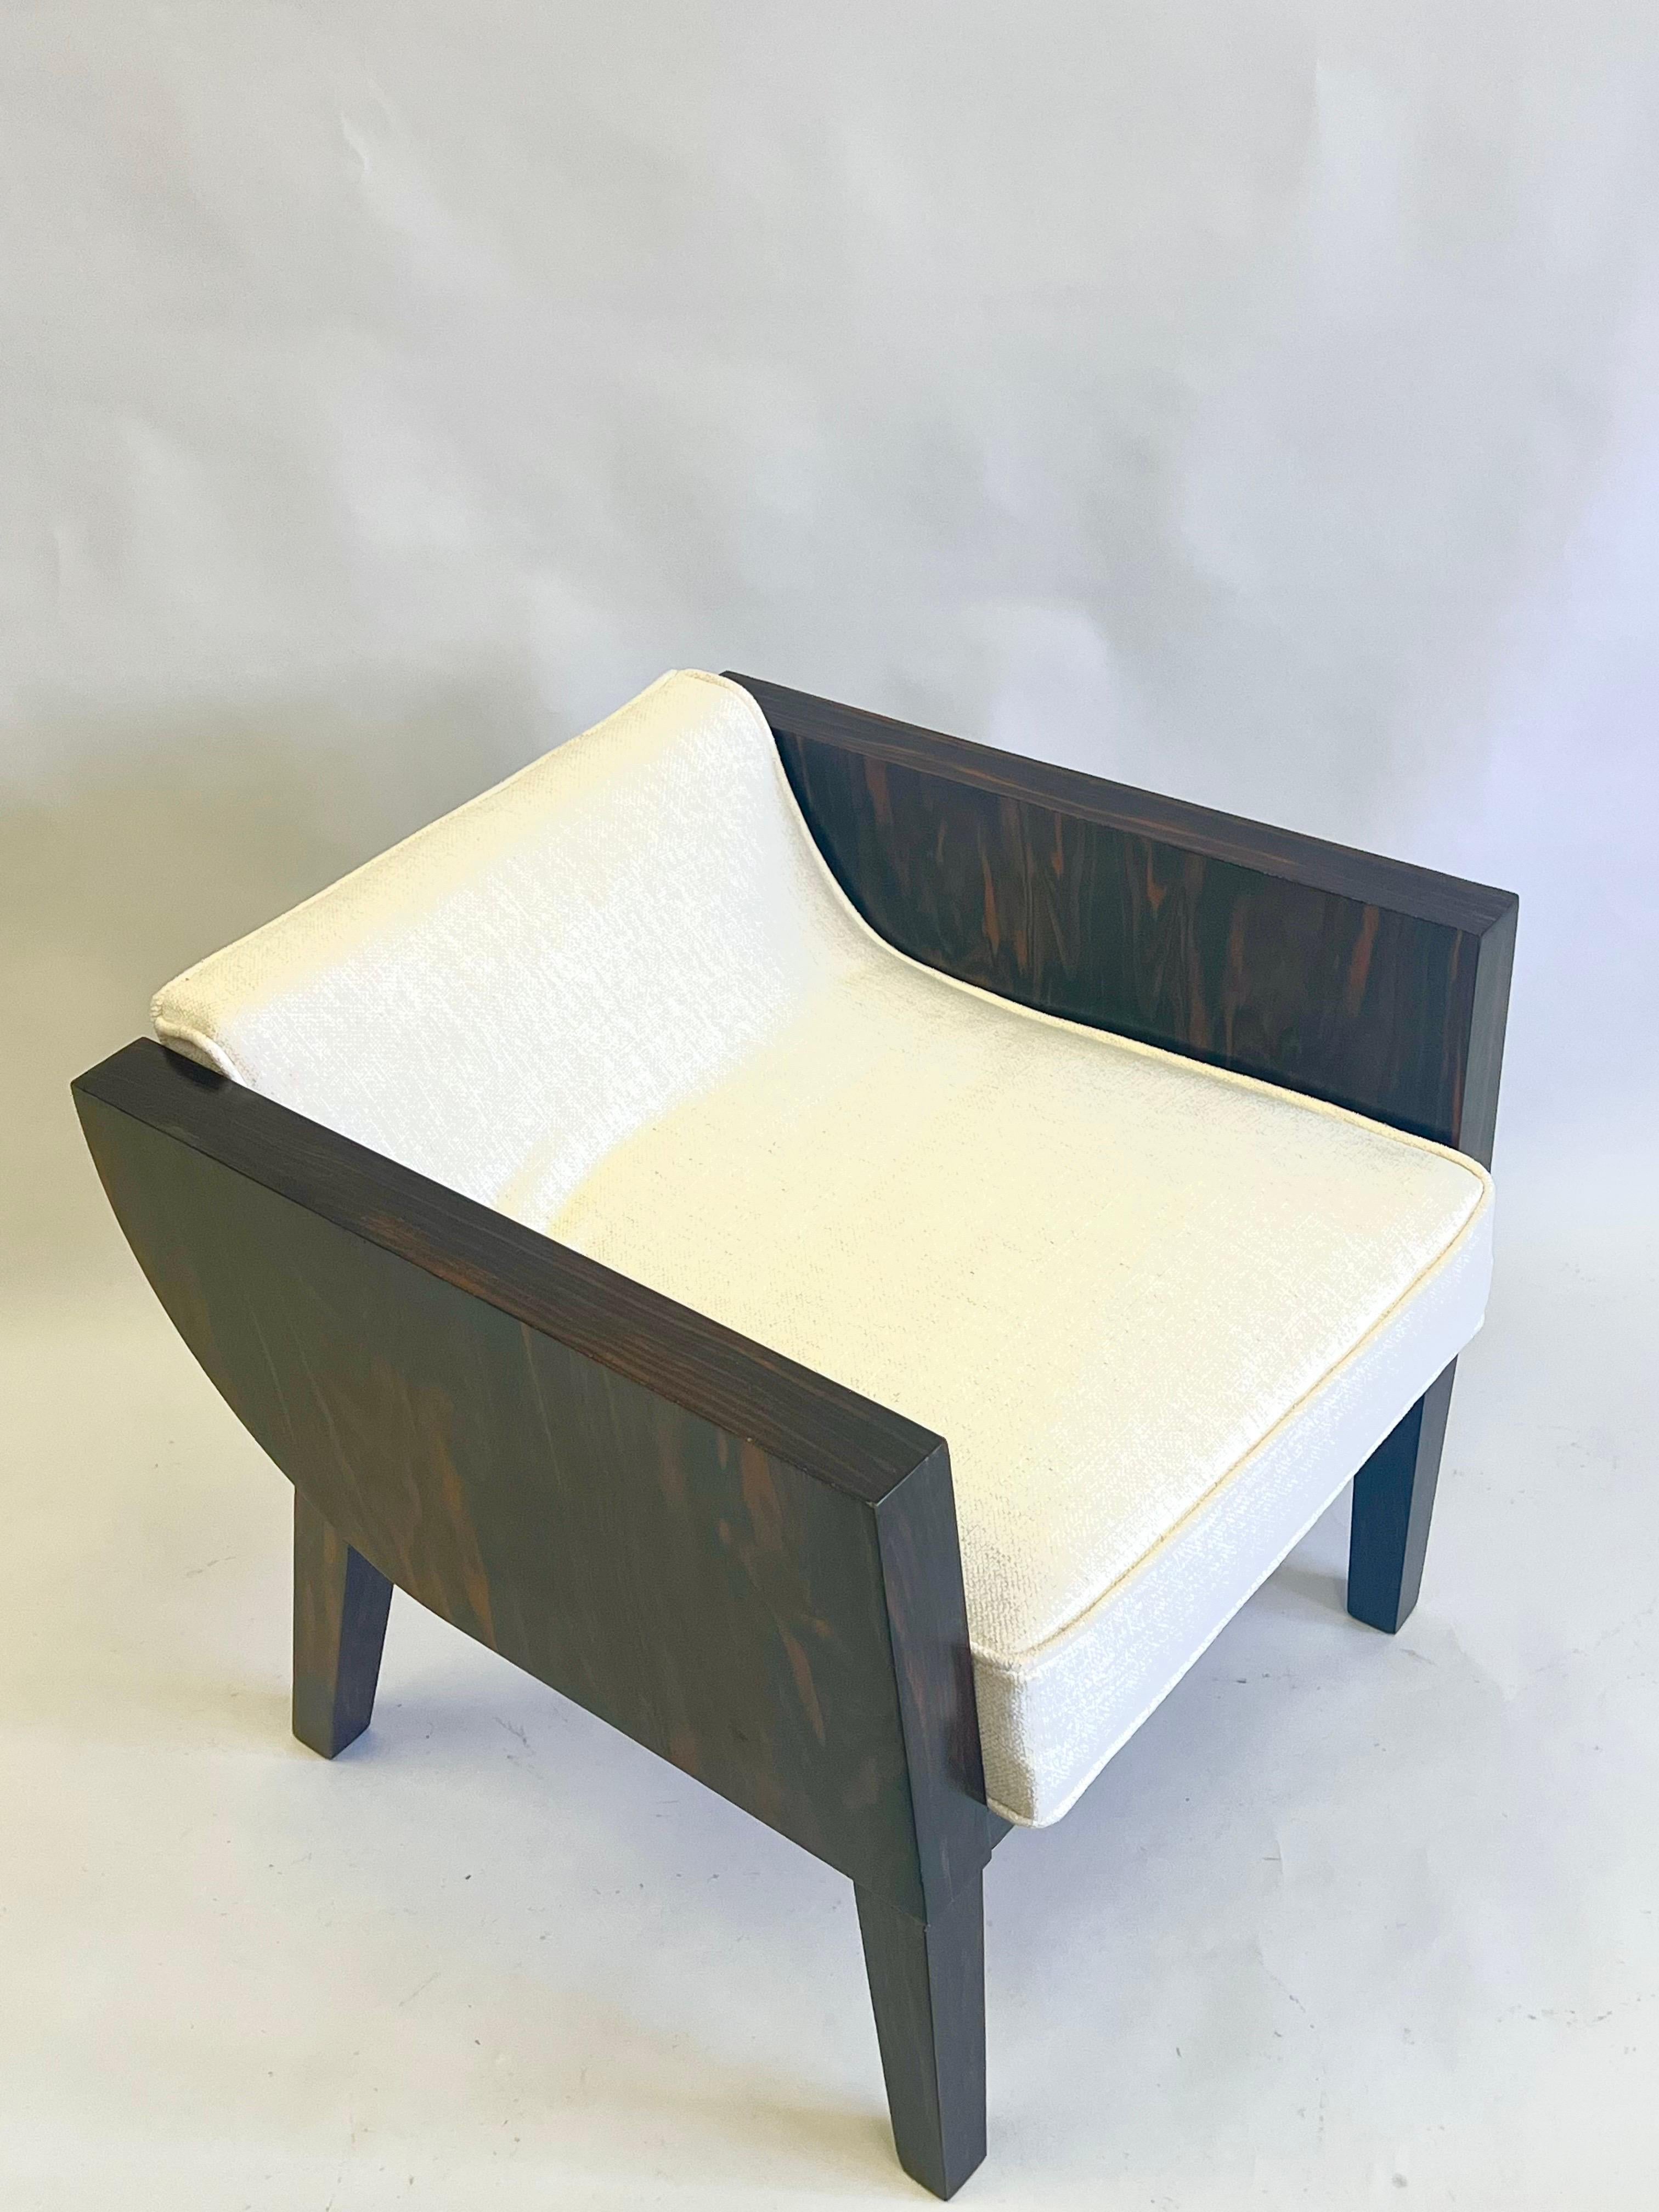 Ein eleganter und zeitloser französischer Art Deco Sessel / Lounge Chair aus Makassar Ebenholz und im Stil von Emile-Jacques Ruhlmann. Der Stuhl ist ein hervorragendes Beispiel für den Kubismus und den Einfluss der afrikanischen Kunst auf das